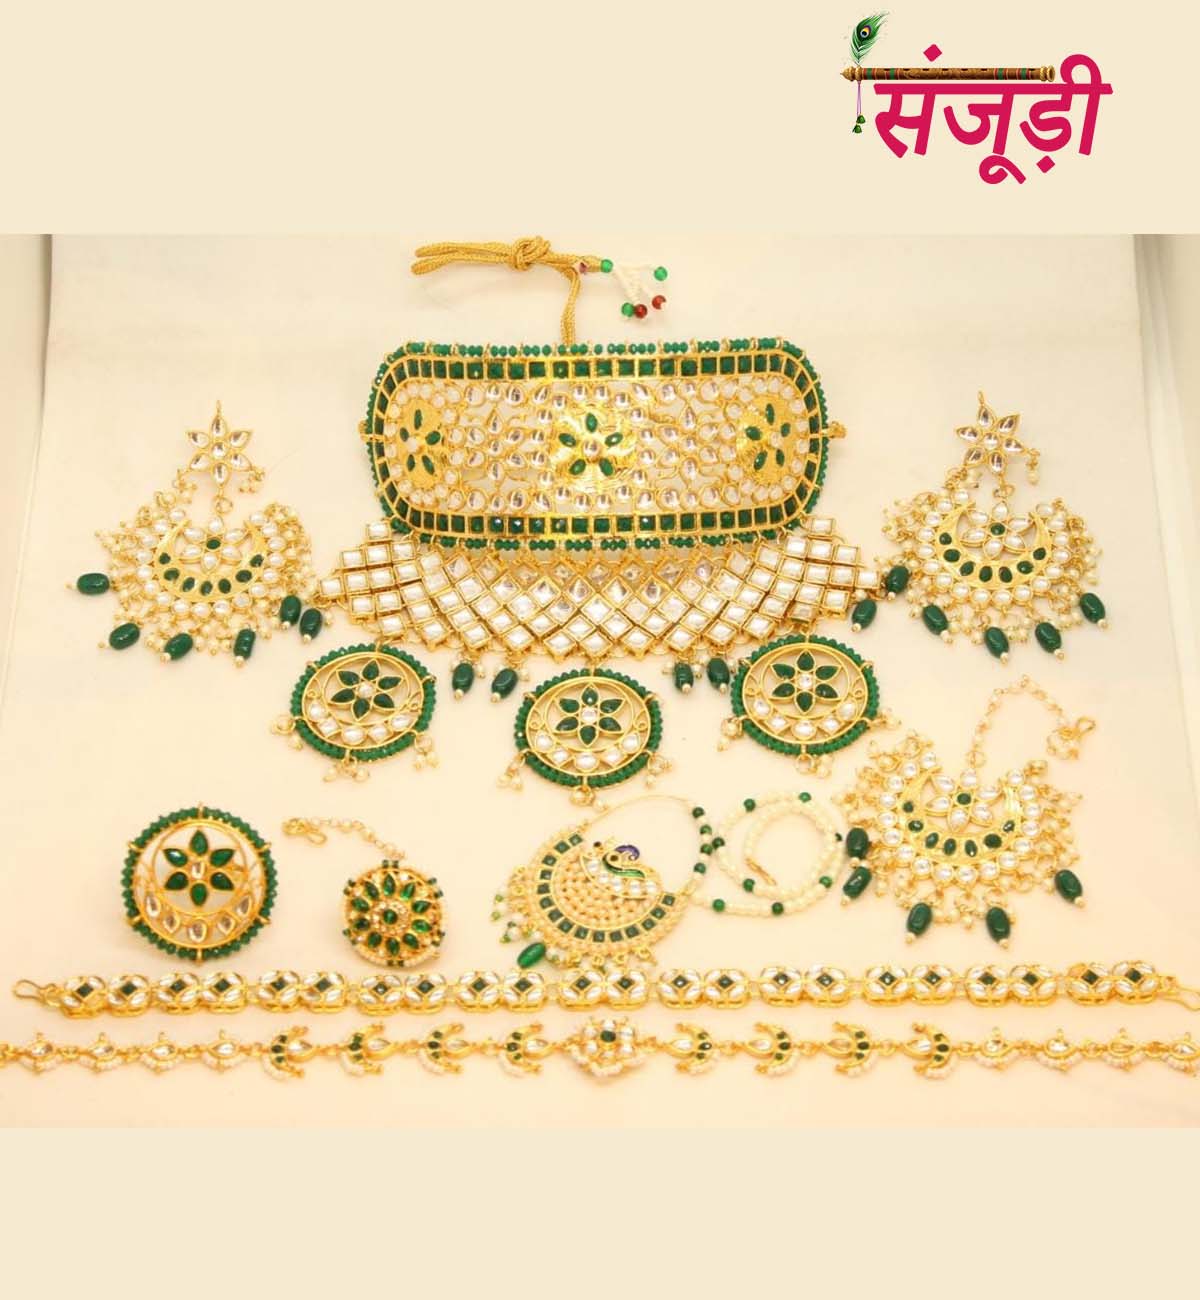 Mini Rajwadi Jewelry Set with Big Size Aad